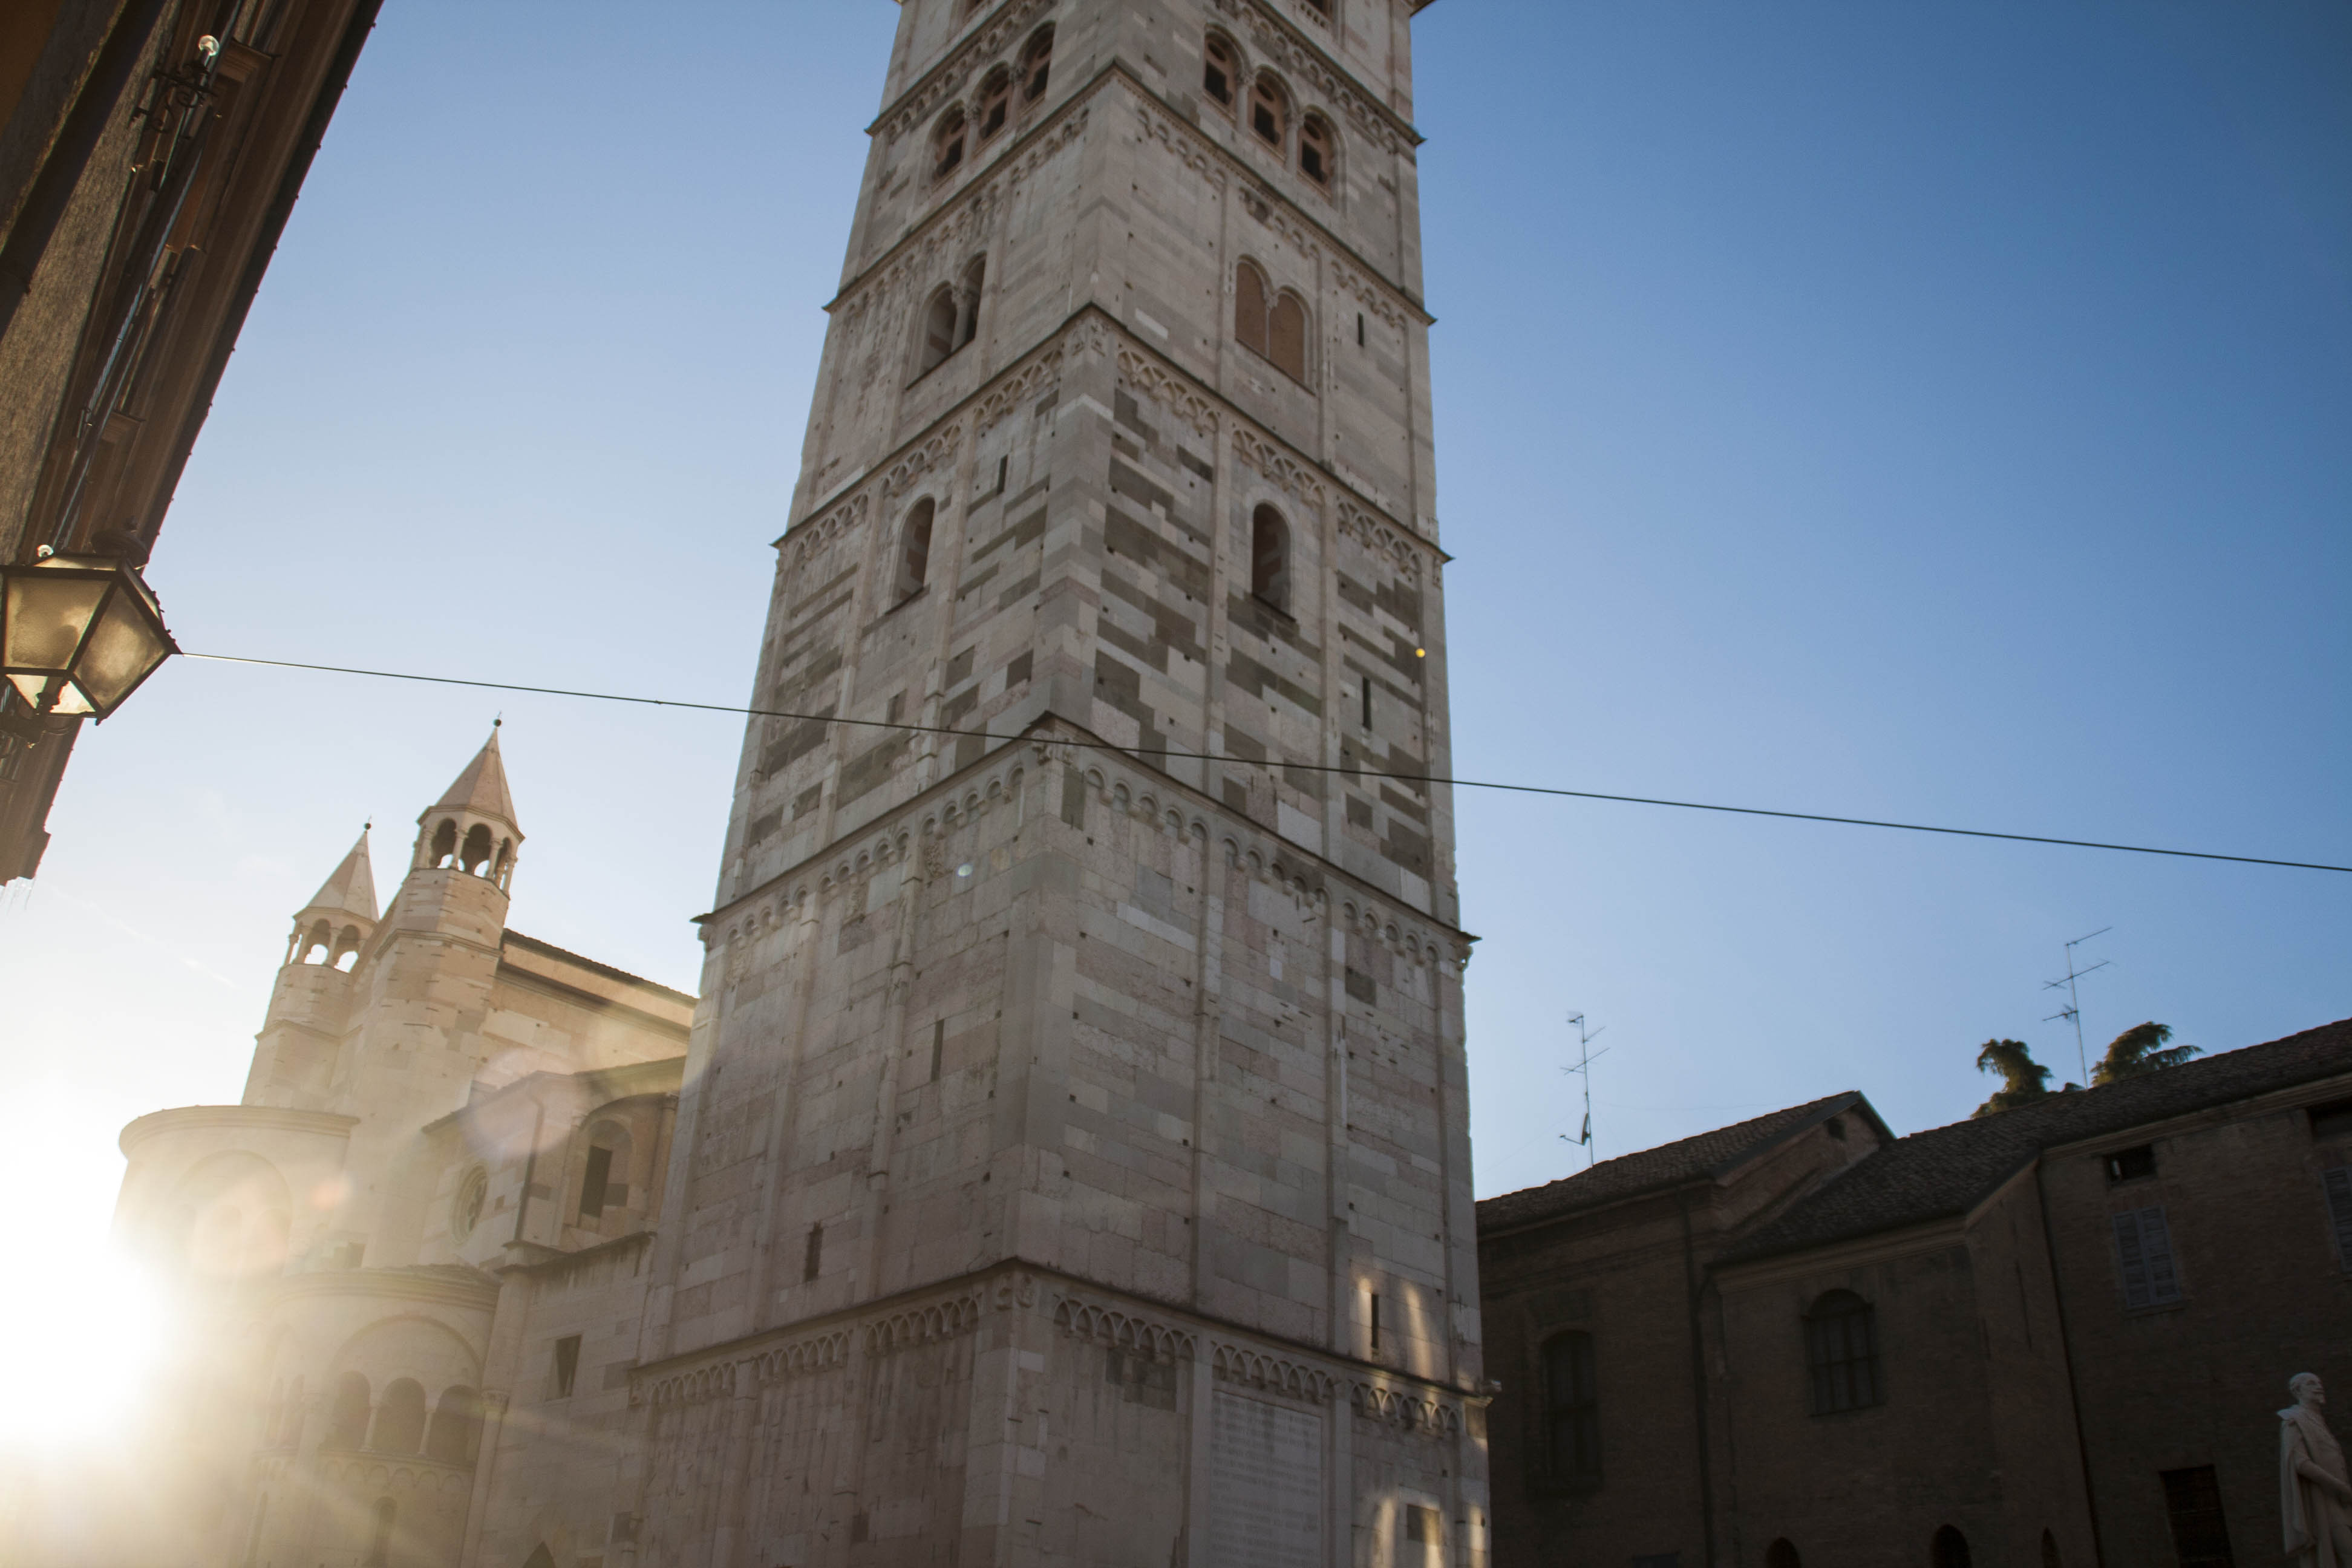 Modena Duomo Edifici Monumenti campanile 